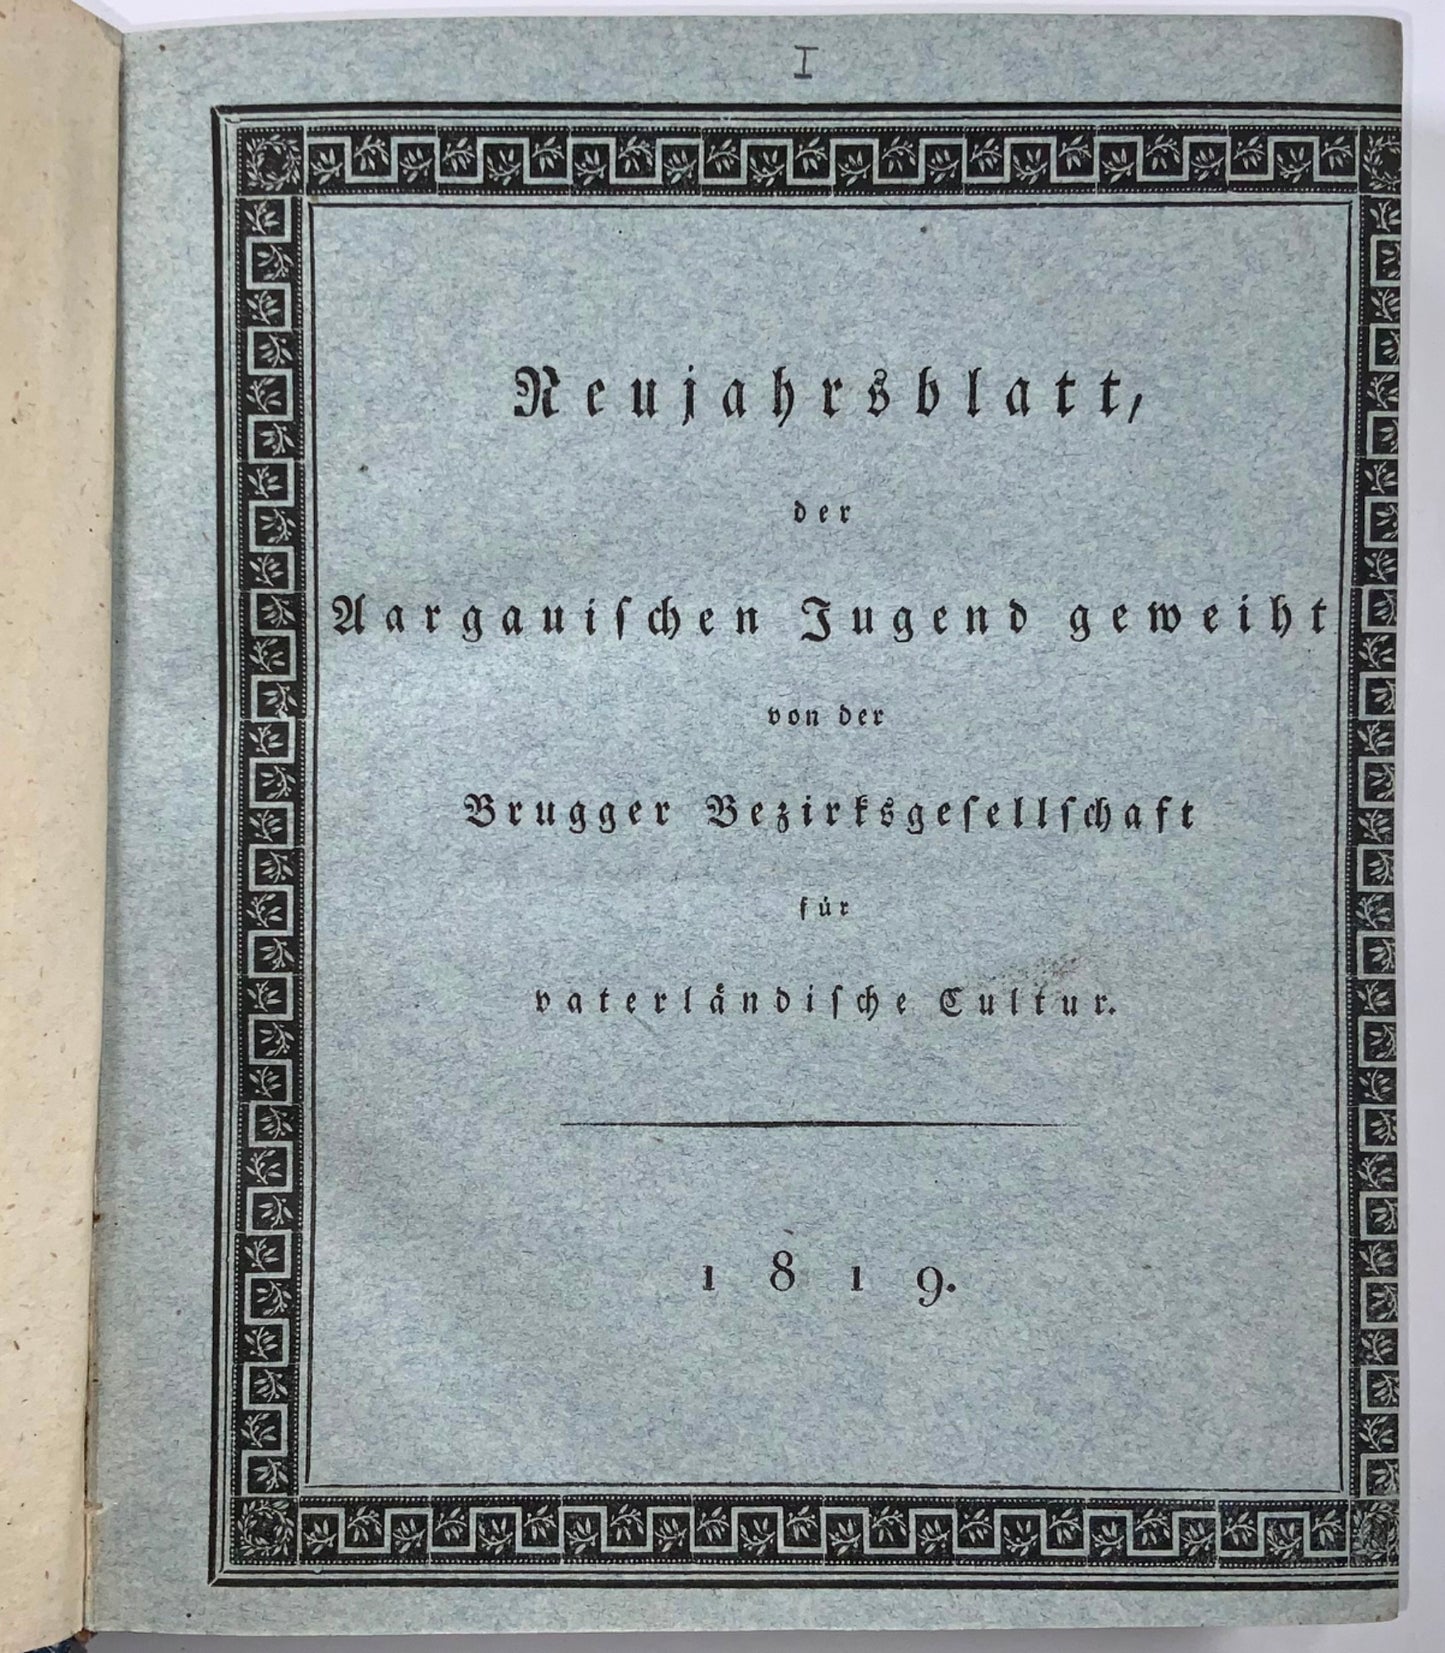 1819-29 Neujahrsblatt pour Argovie, Suisse, ensemble complet, illustré